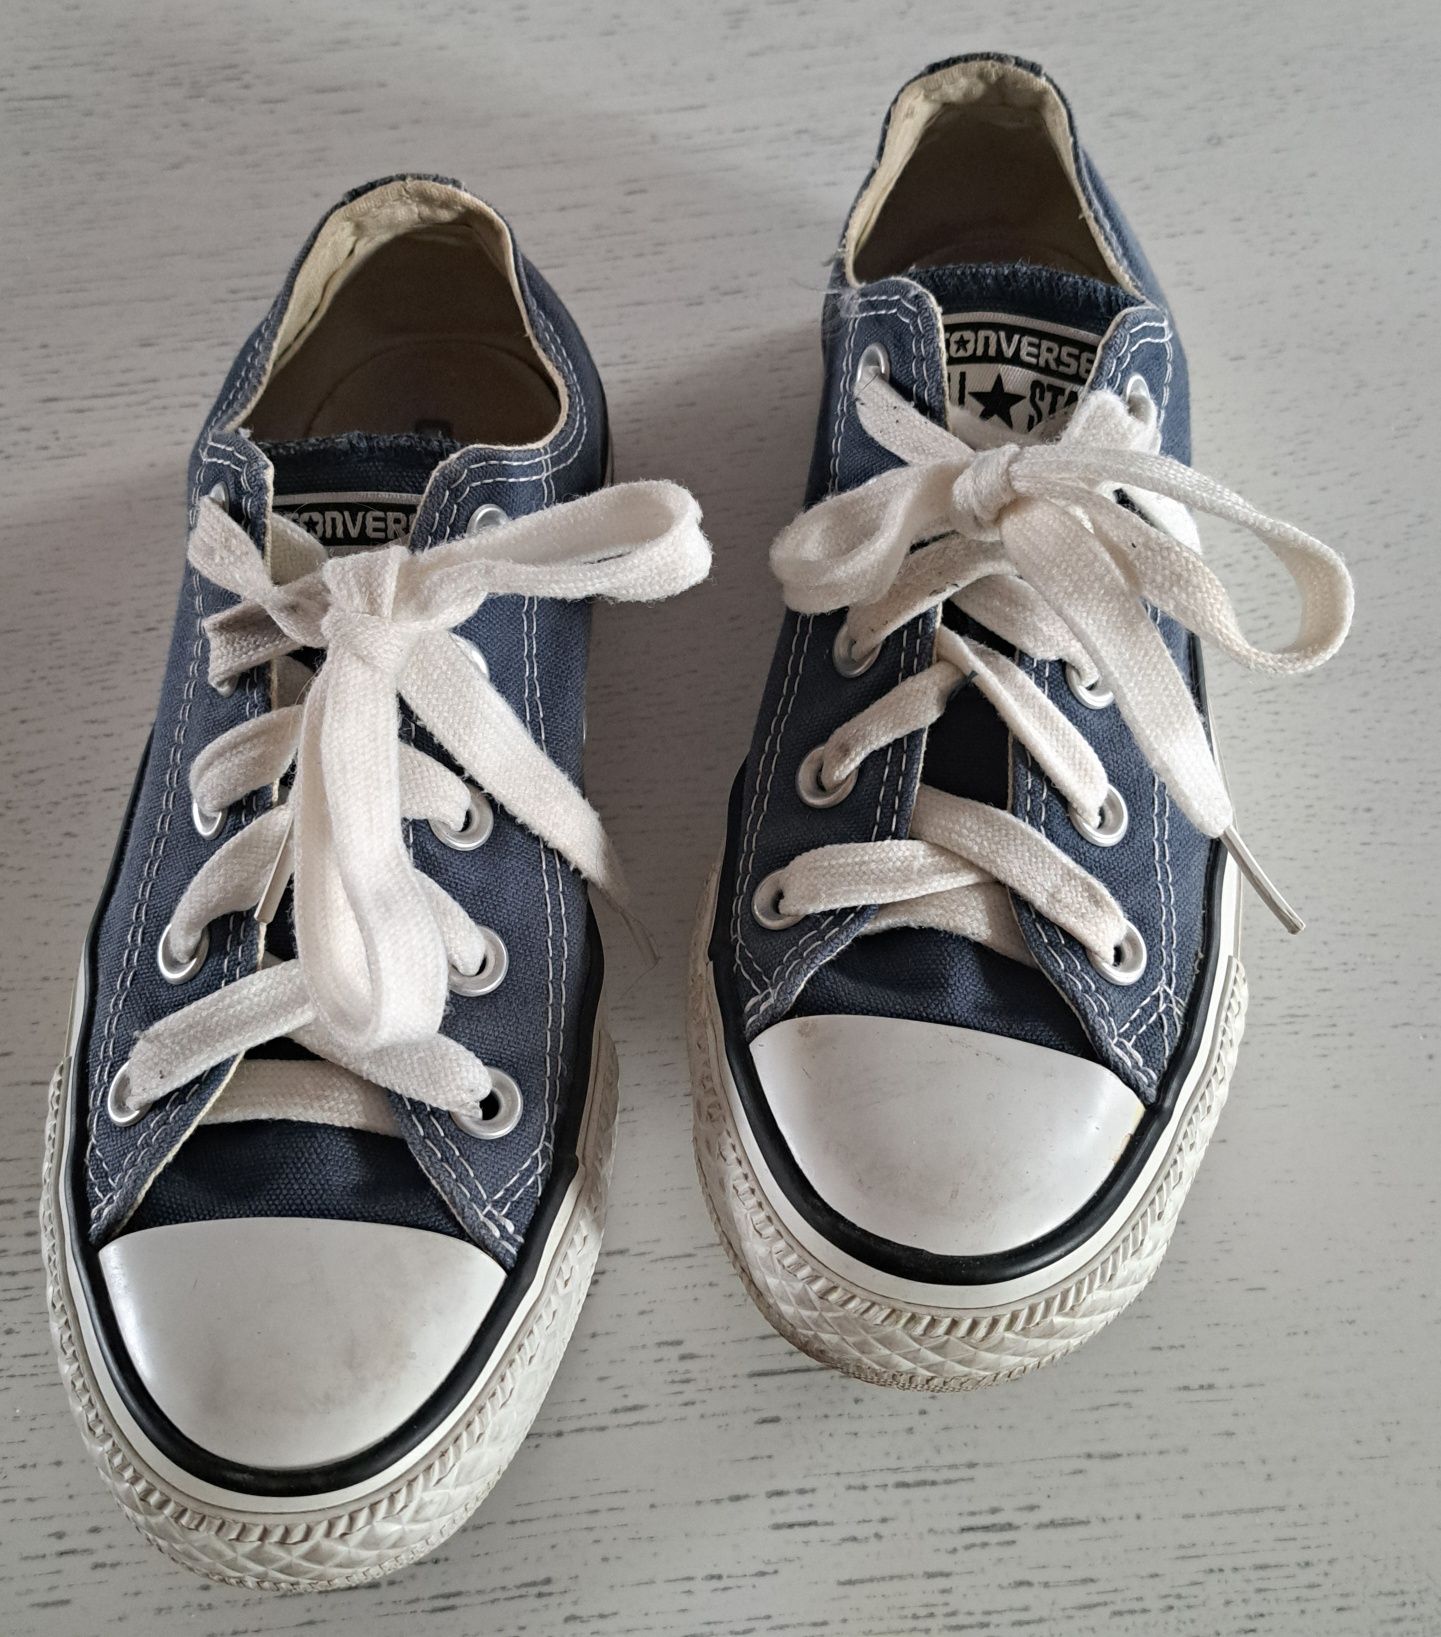 Trampki Converse , niebieskie, 35 rozmiar